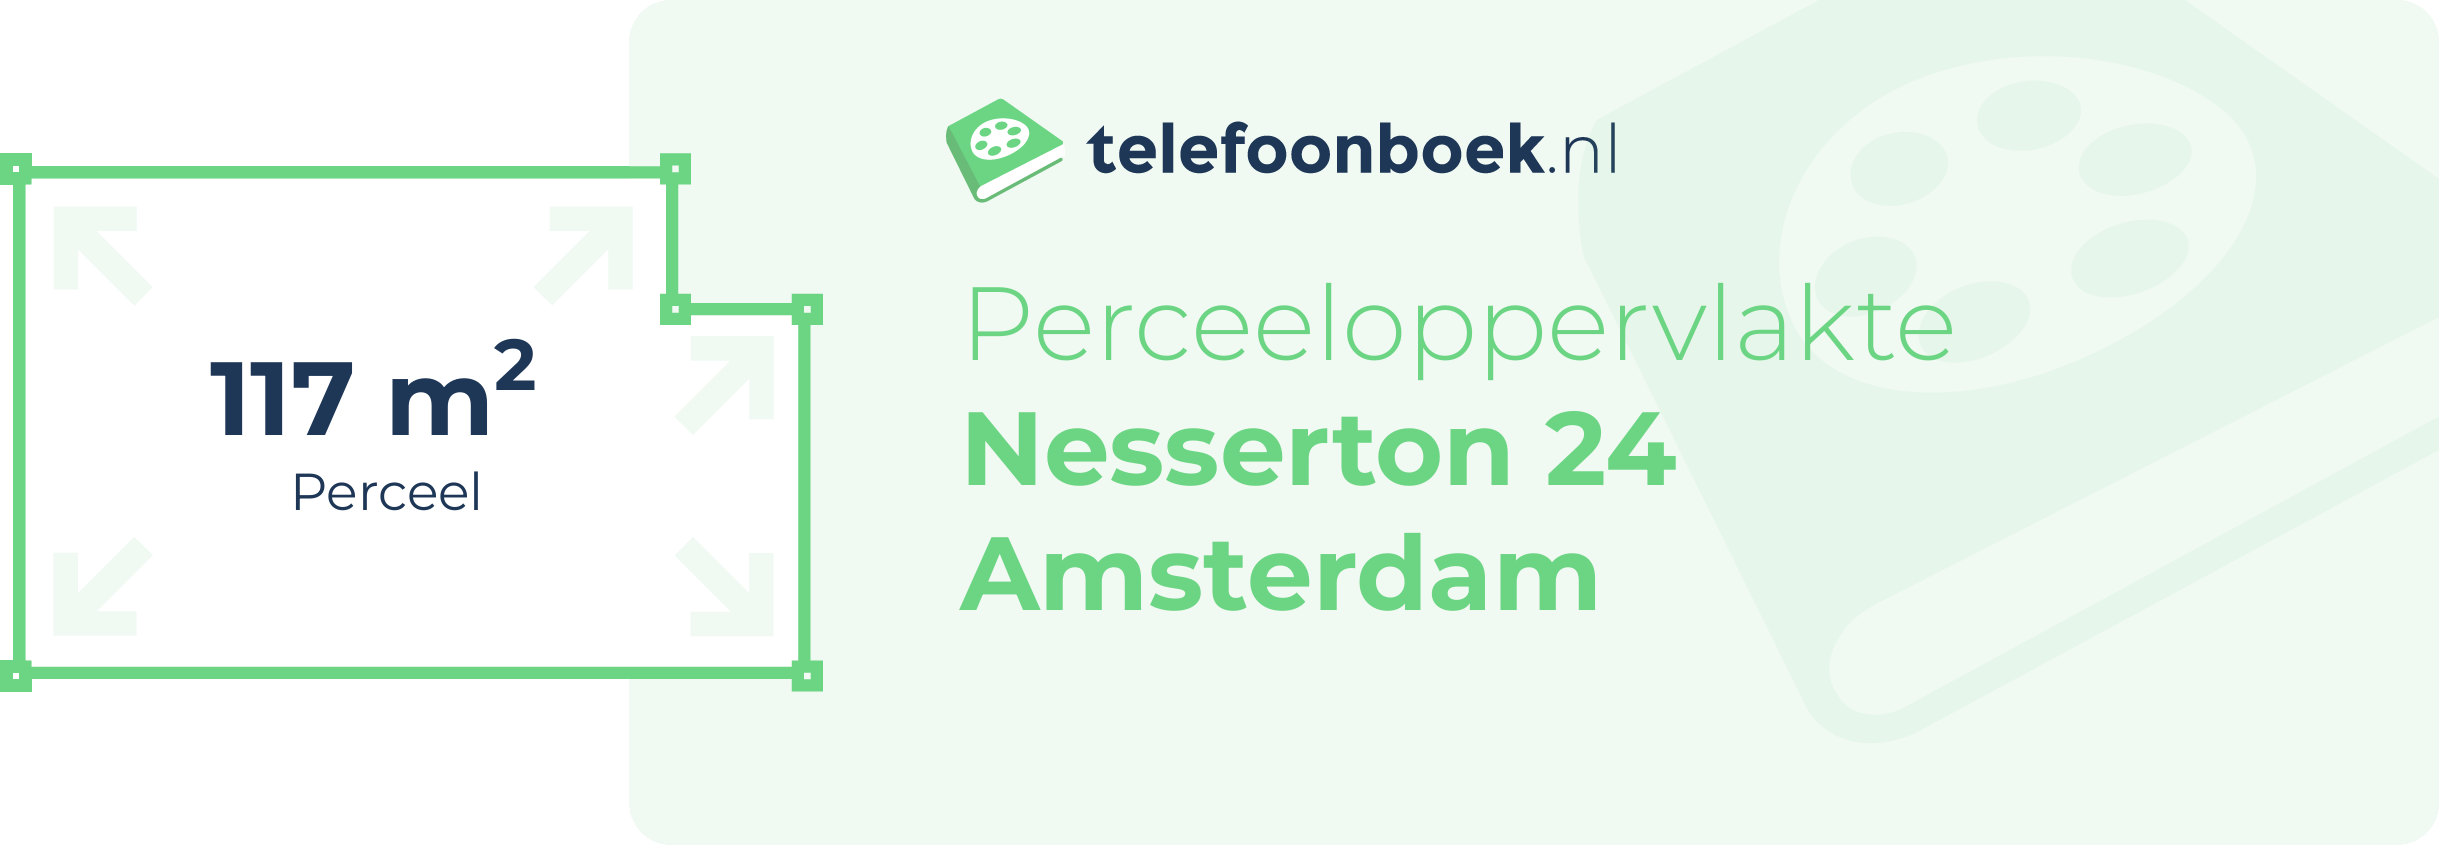 Perceeloppervlakte Nesserton 24 Amsterdam